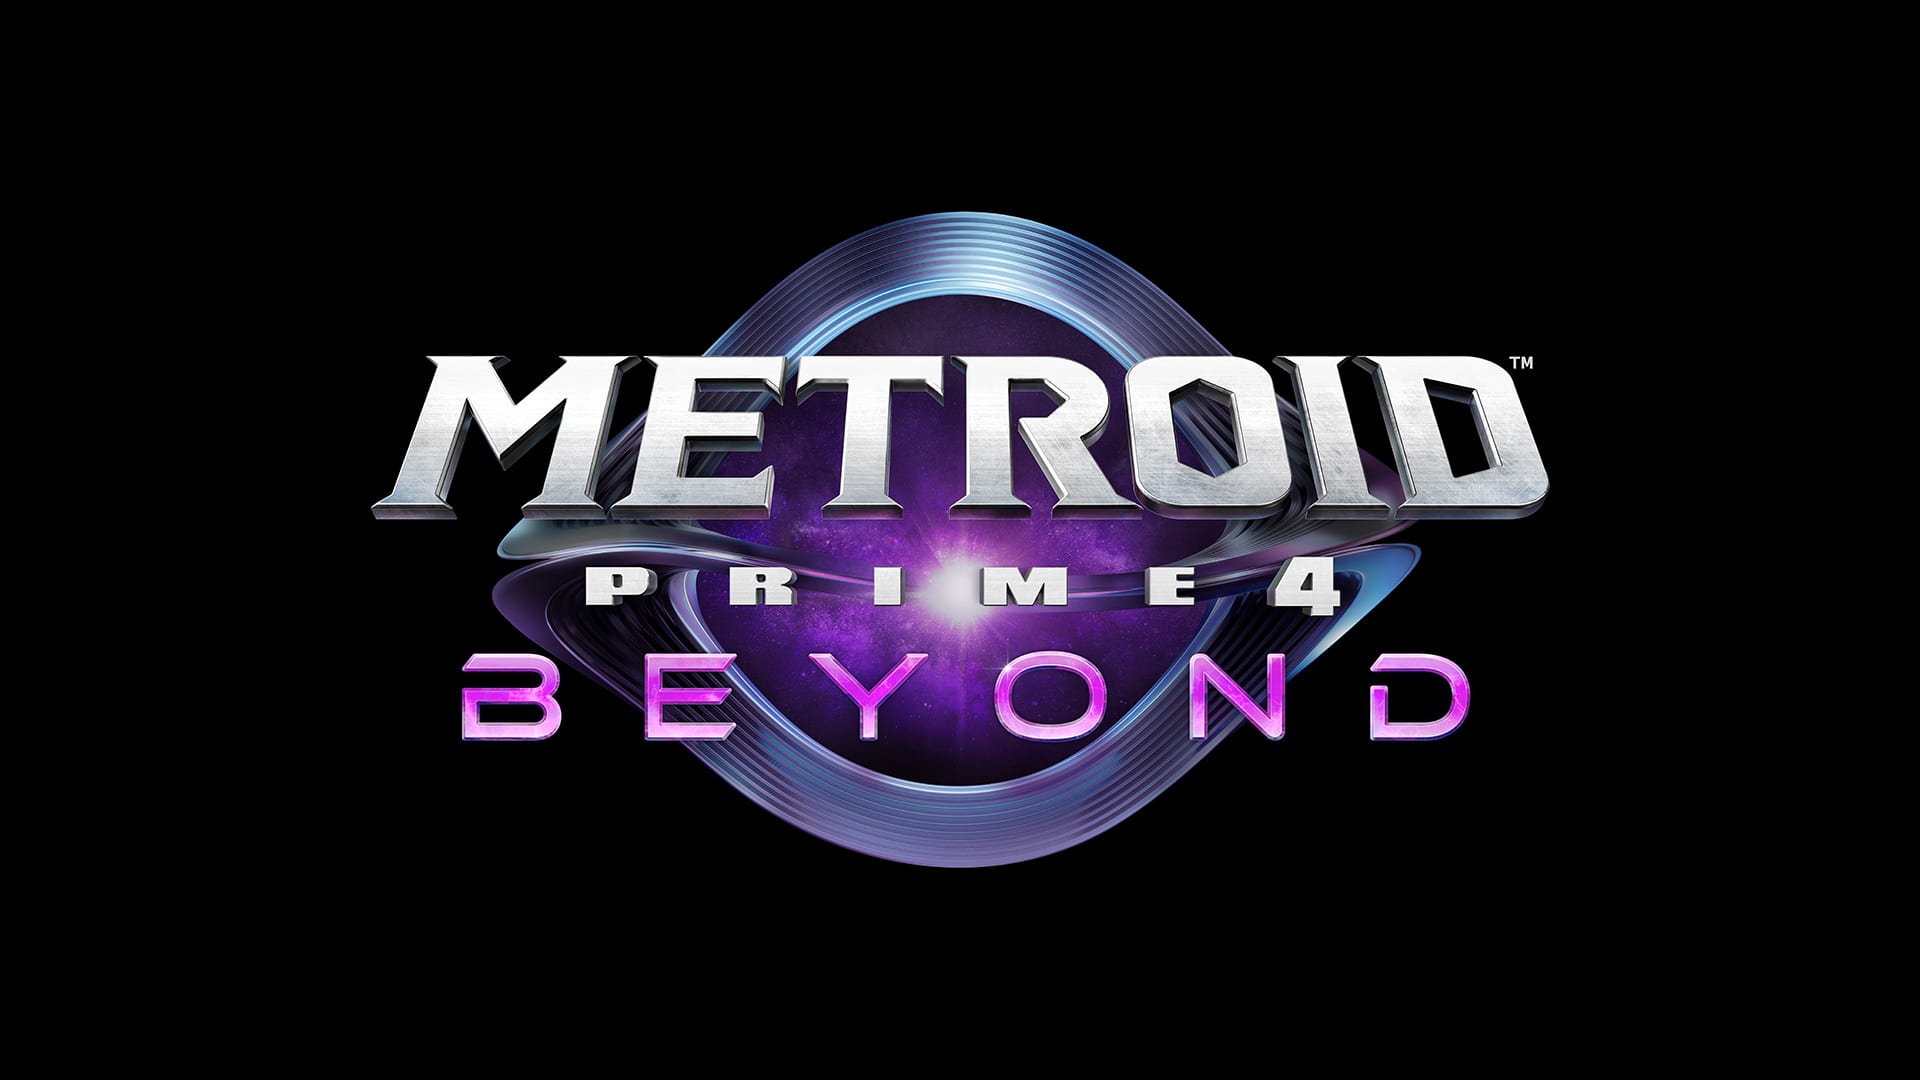 Metroid Prime™ 4: Beyond